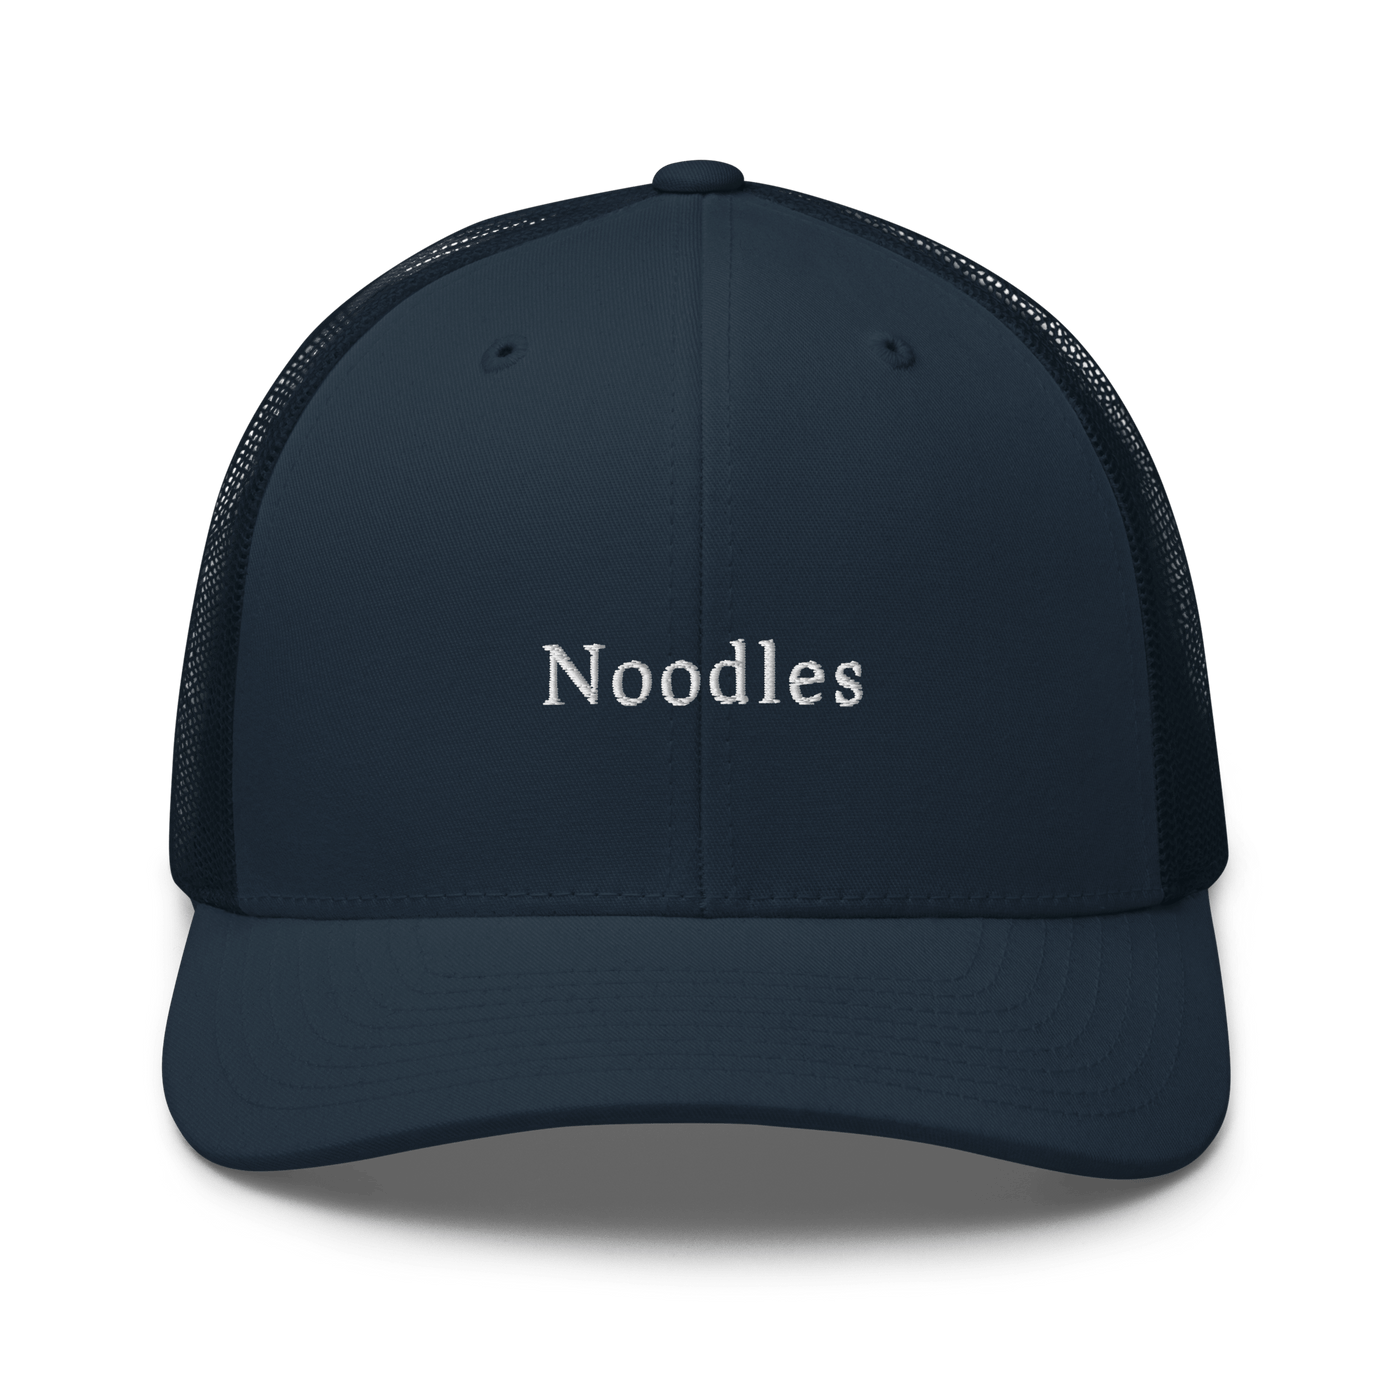 Noodles Trucker Cap - Navy - - Just Another Cap Store